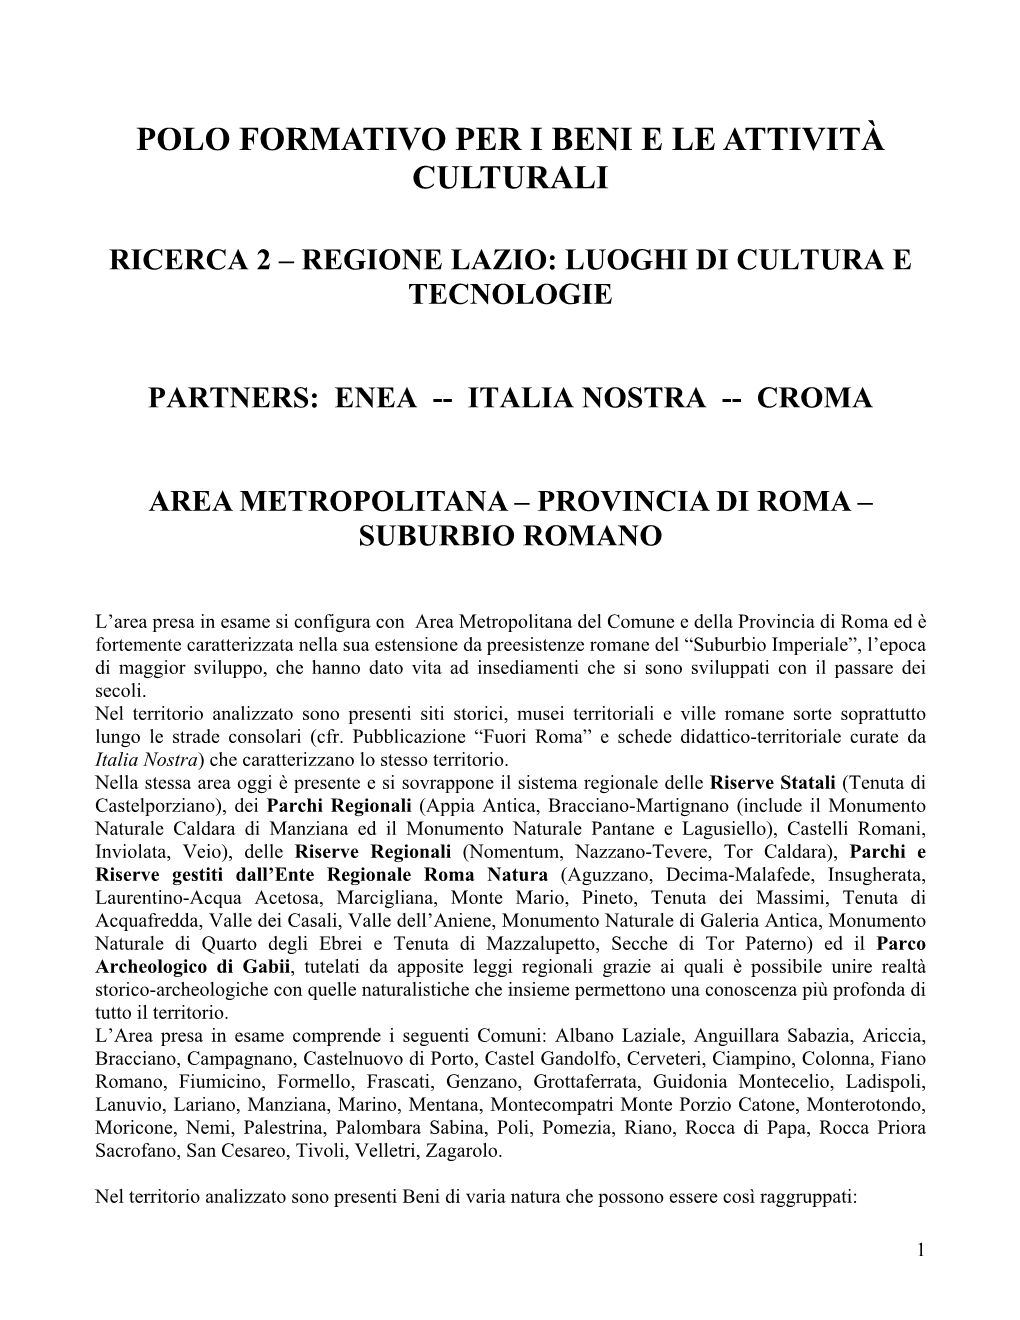 Luoghi Di Cultura E Tecnologie Italia Nostra Enea Croma